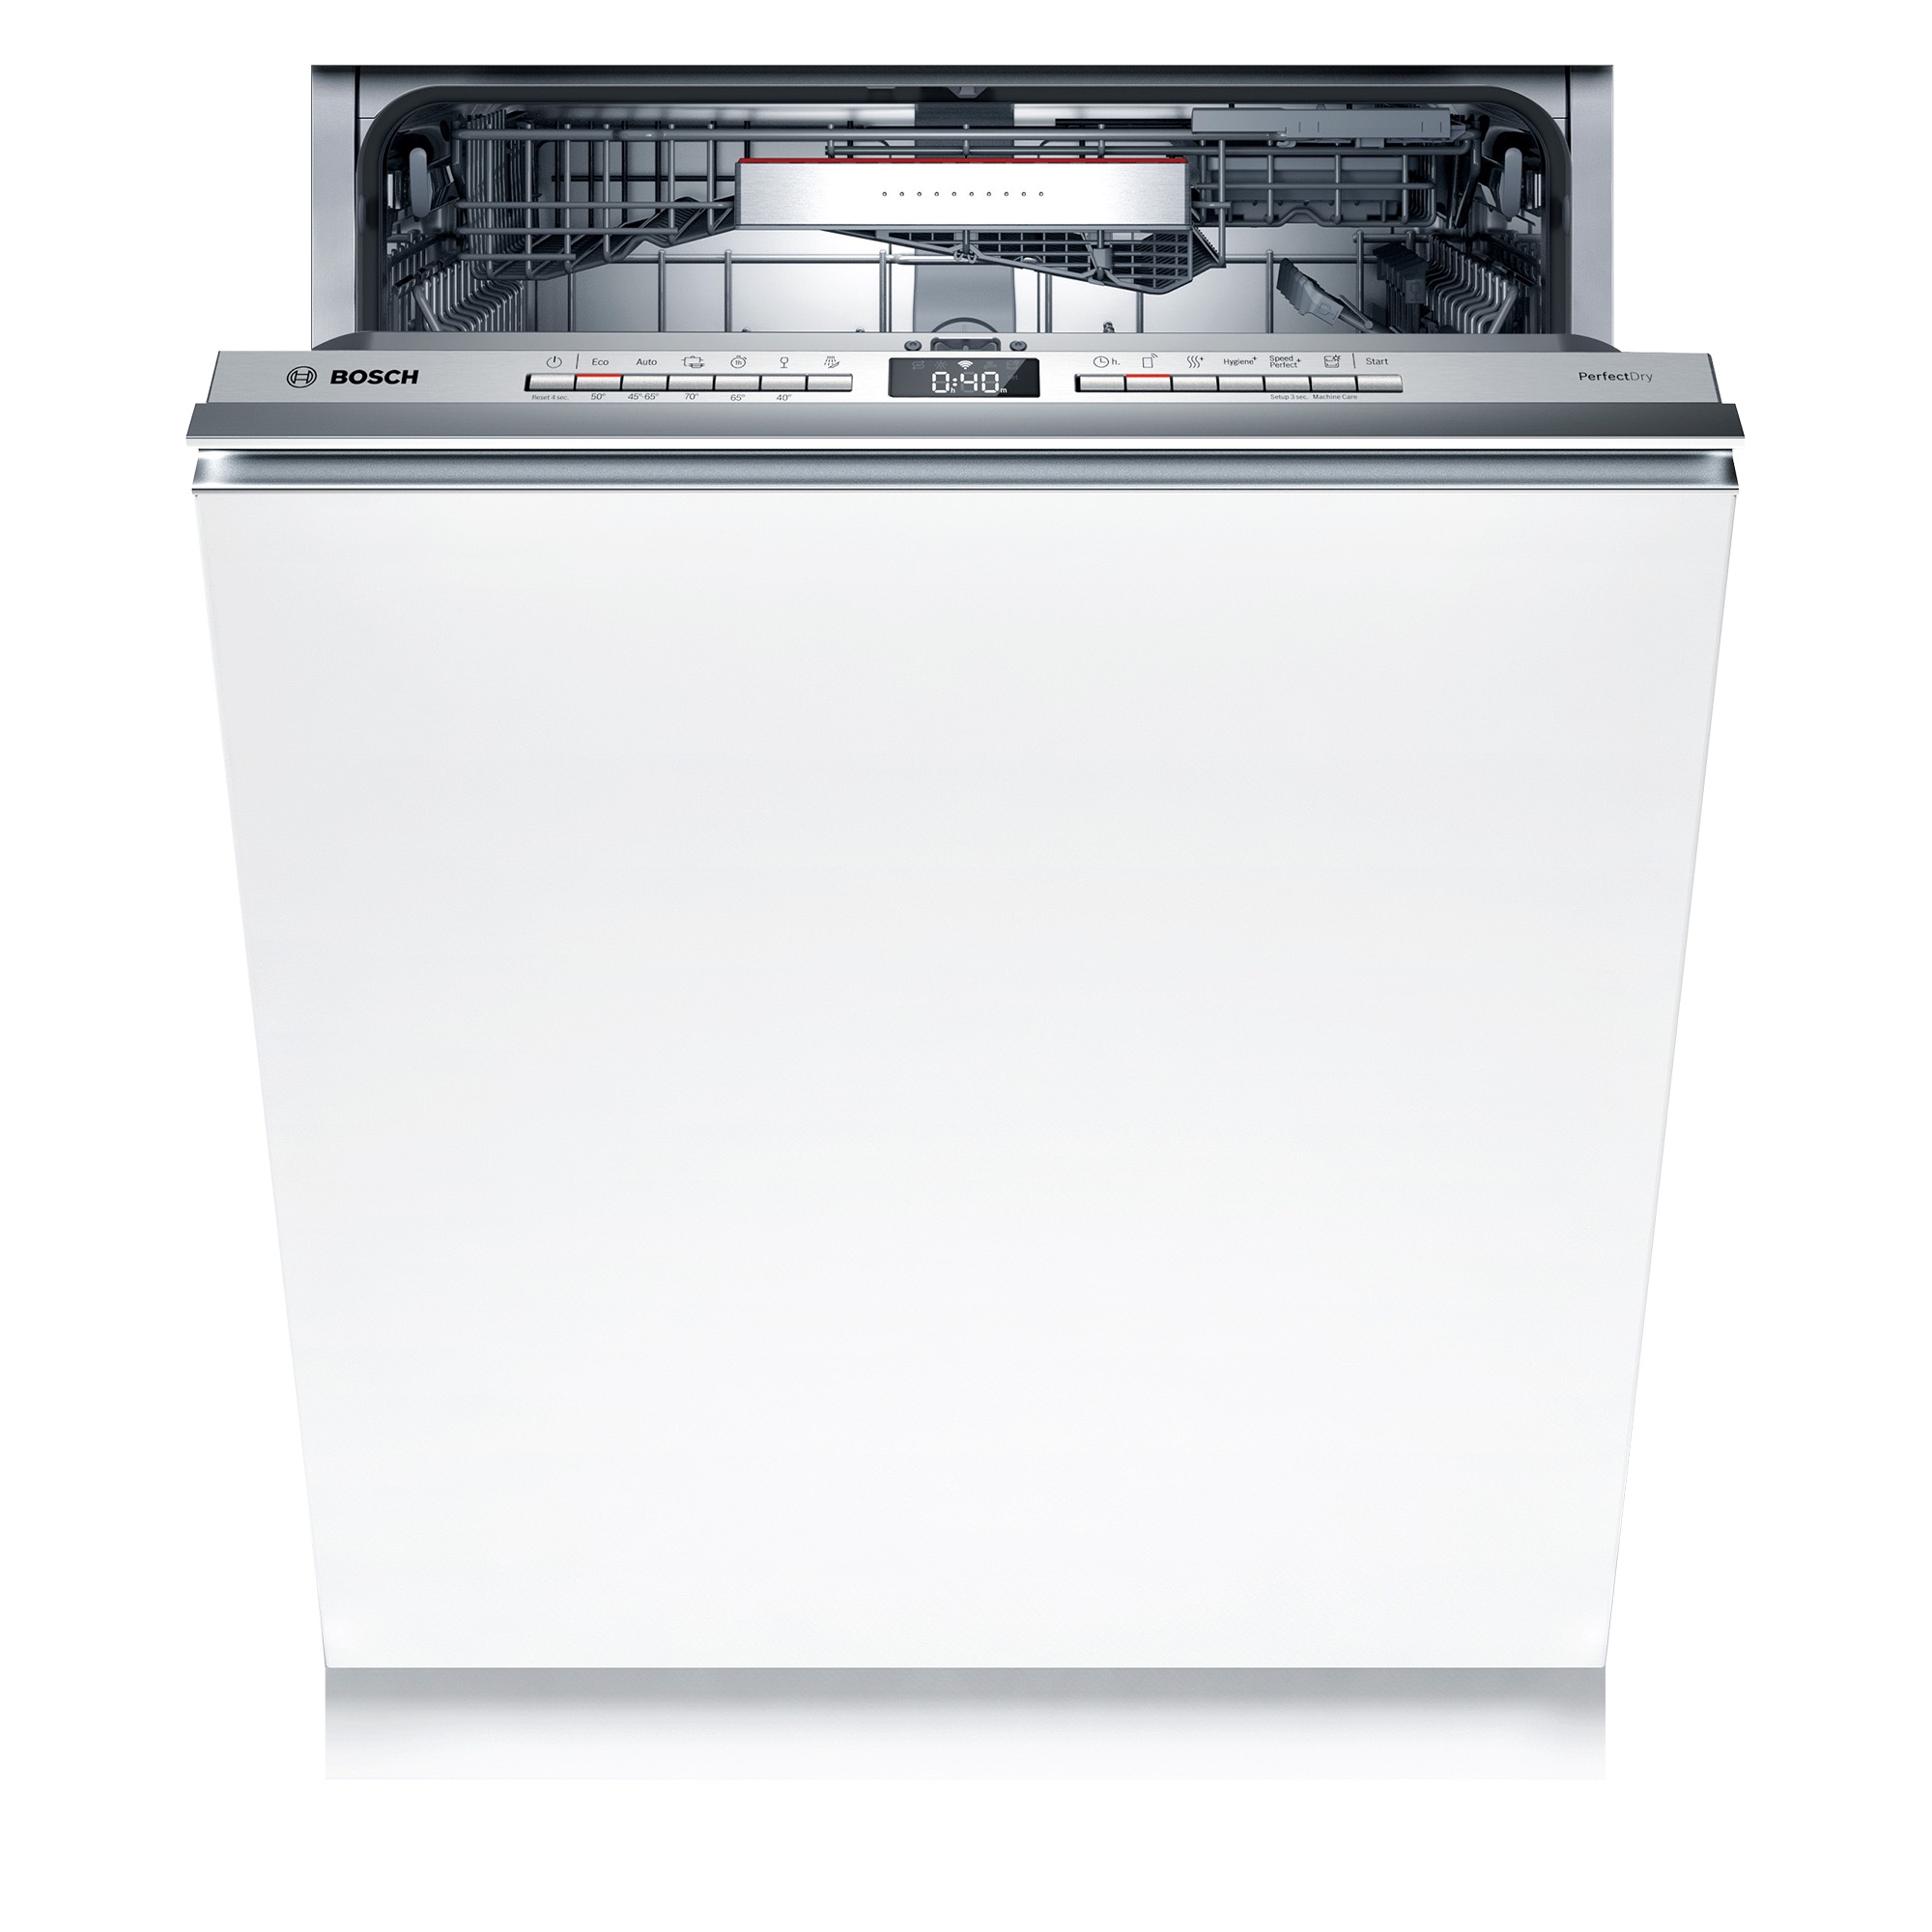 ビルトイン食洗機 フロントオープン W600 フルドアタイプ ゼオライトドライ（本体のみ） KB-PT004-04-G234 扉を開けると操作パネルがあります